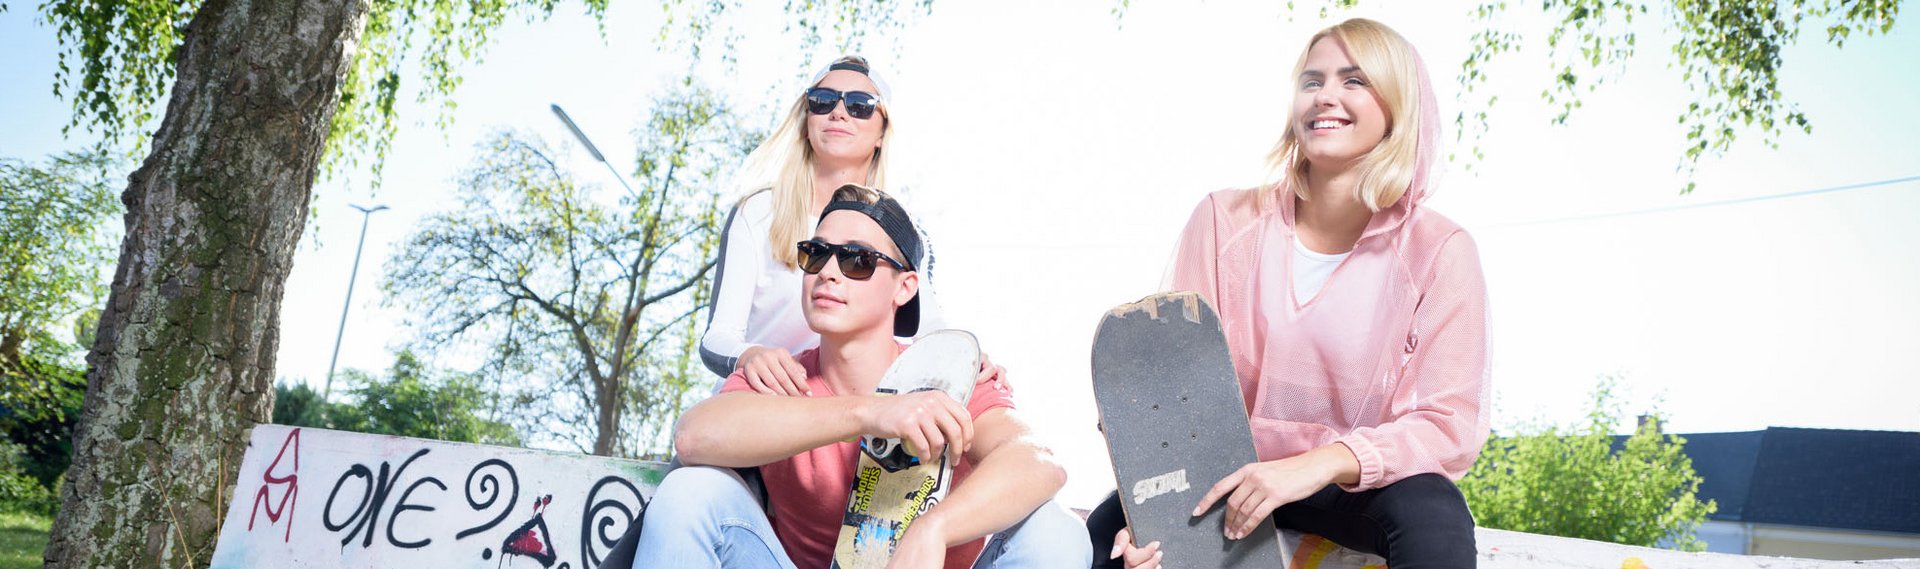 Jugendliche mit Skateboard draußen